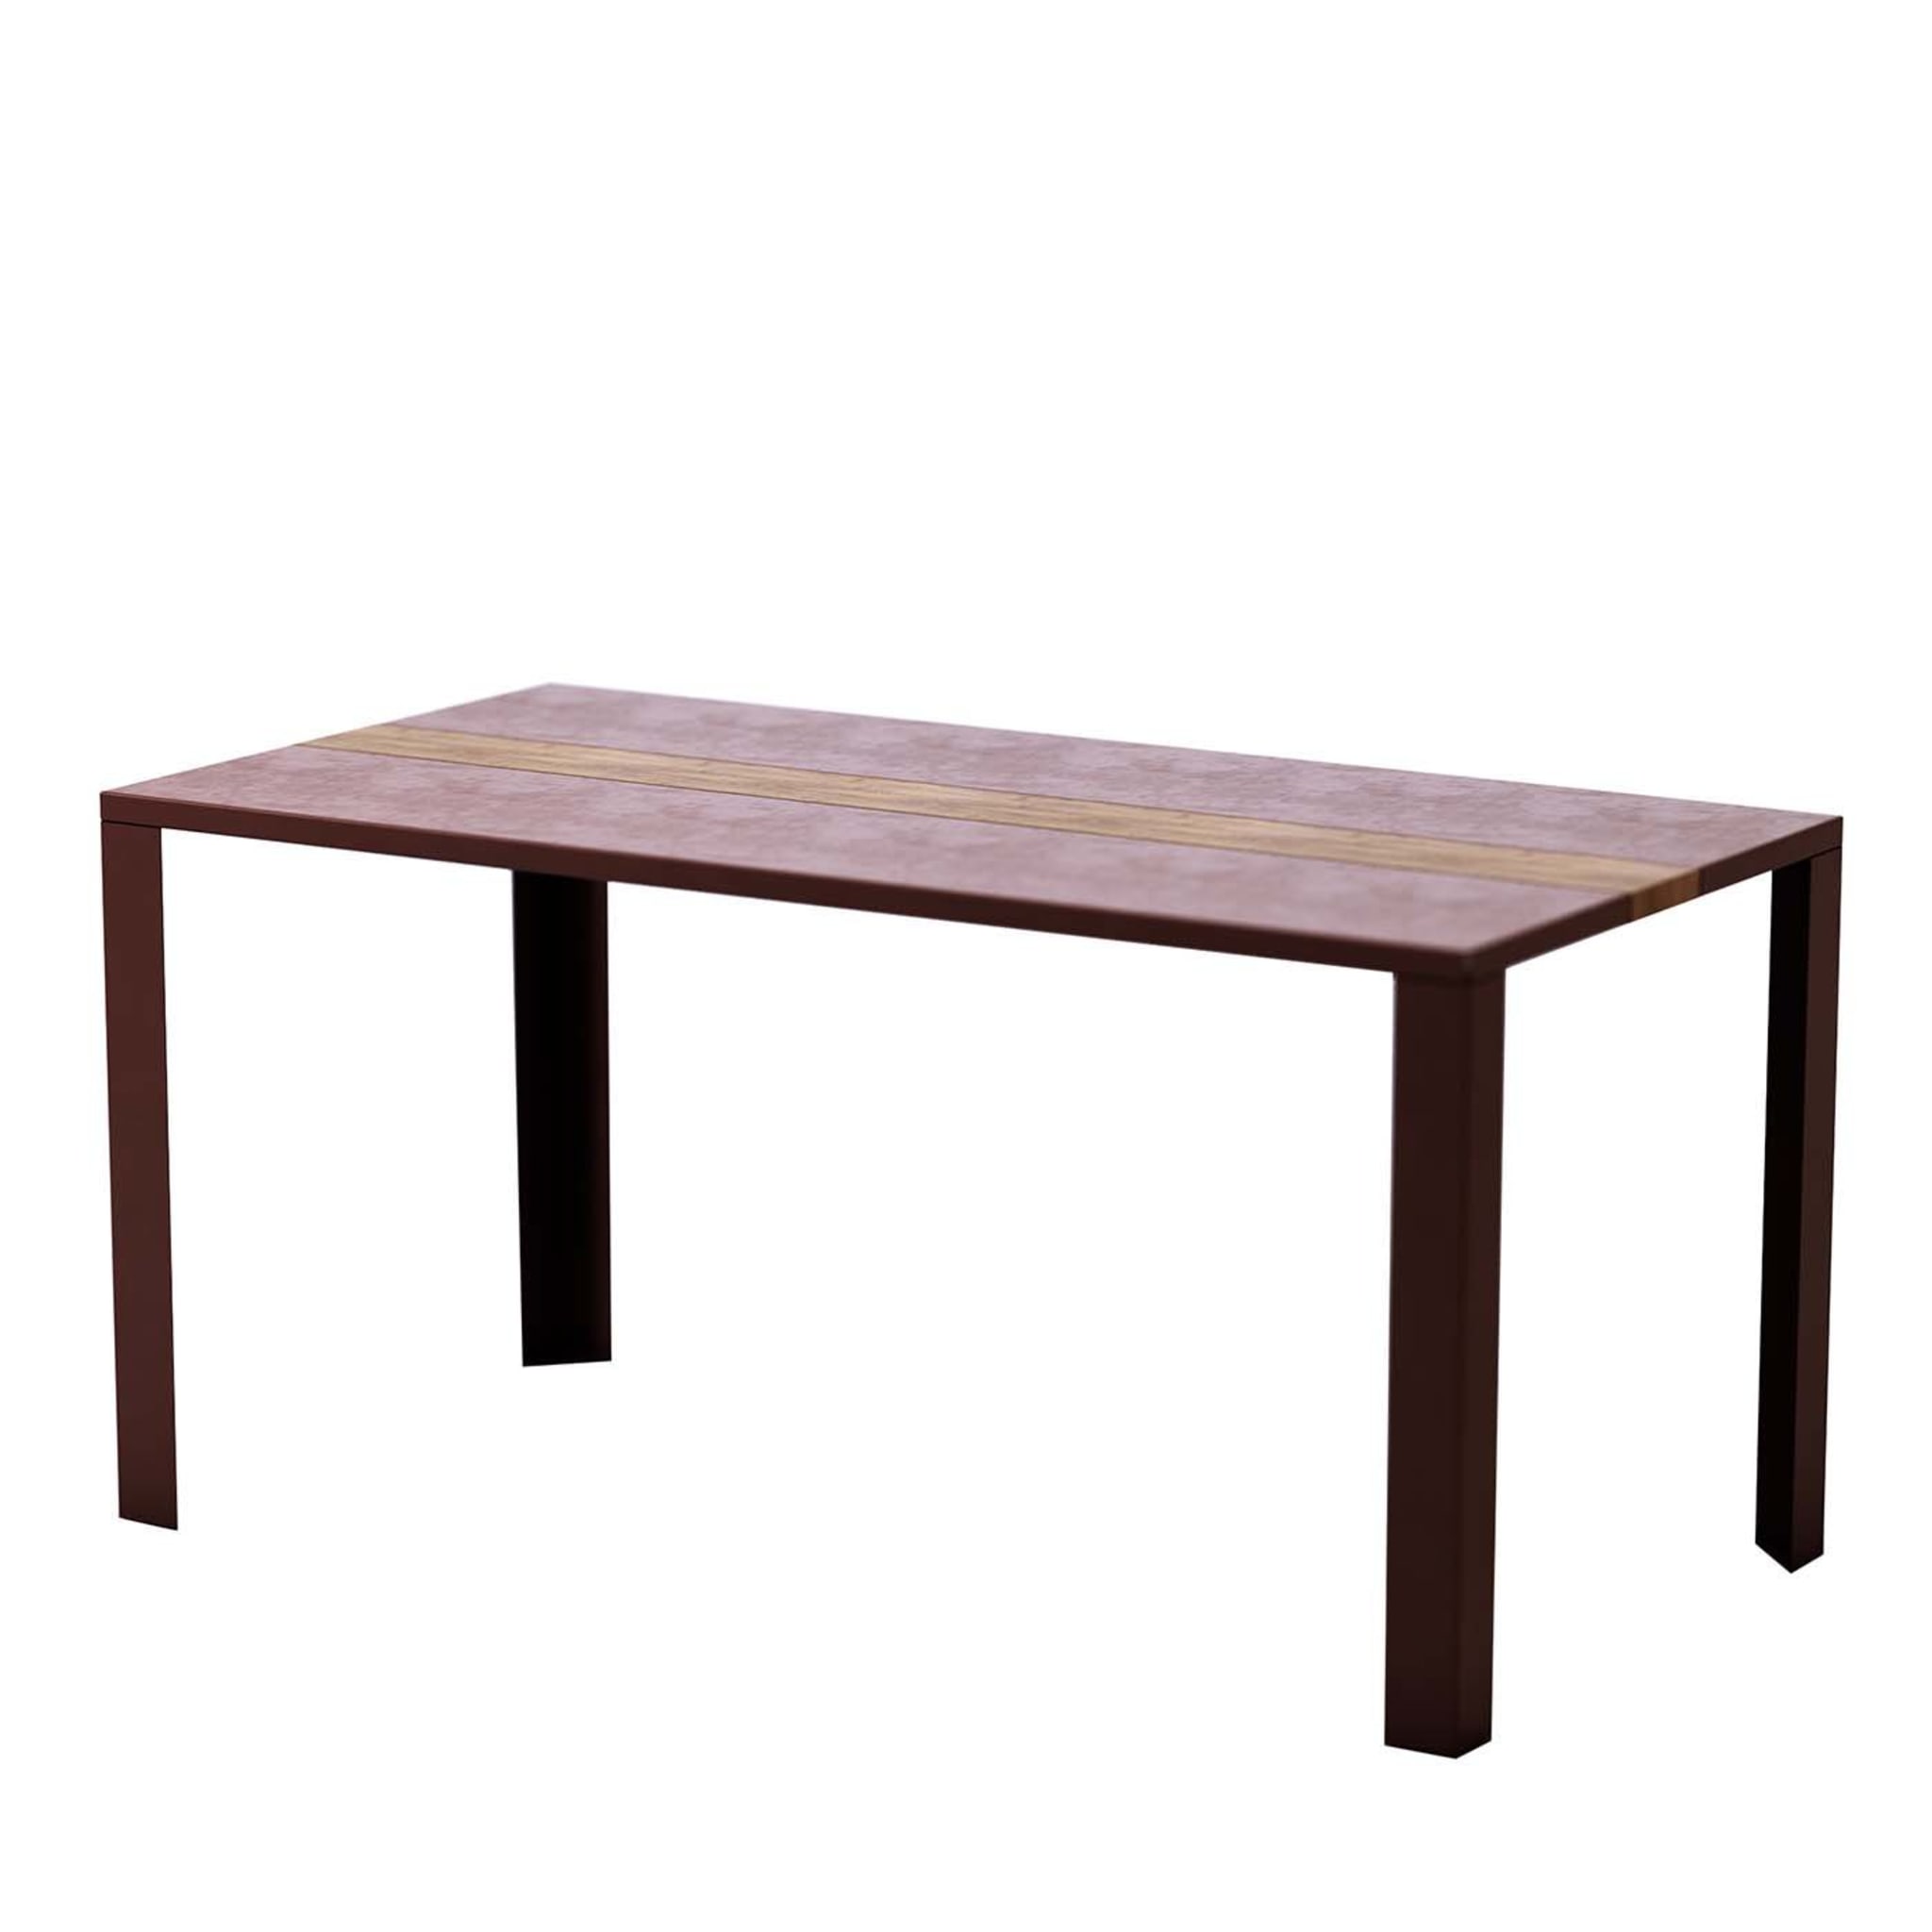 Linear Corten Steel Table - Main view